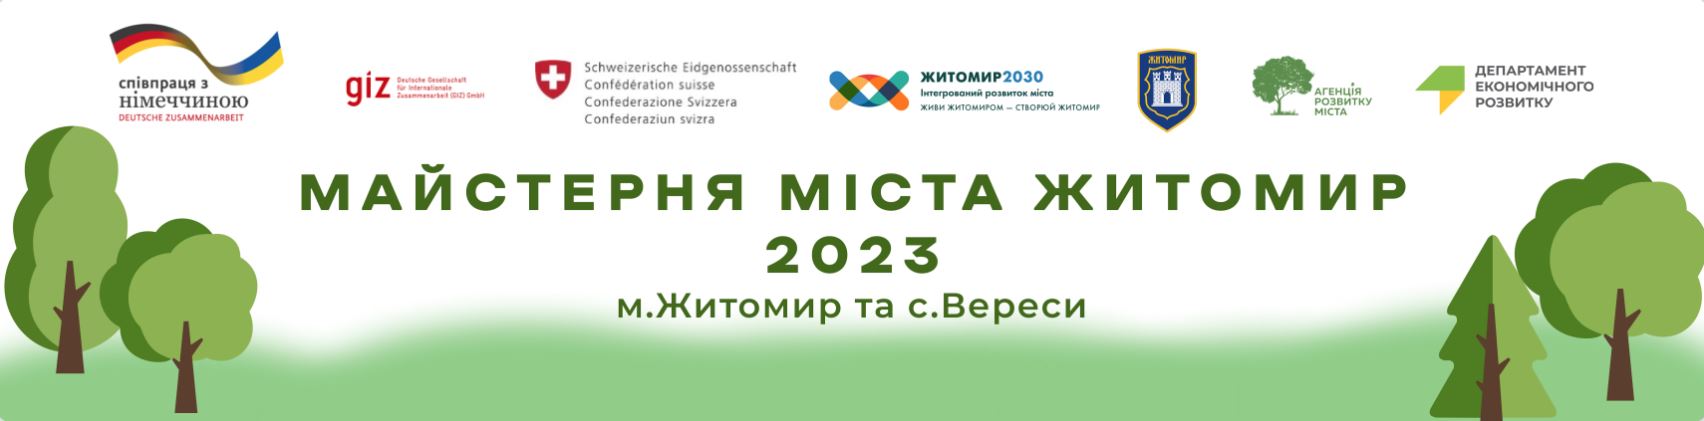 Оголошується конкурс проєктних ідей на участь в урбаністично-культурному фестивалі  «Майстерня міста Житомир 2023»